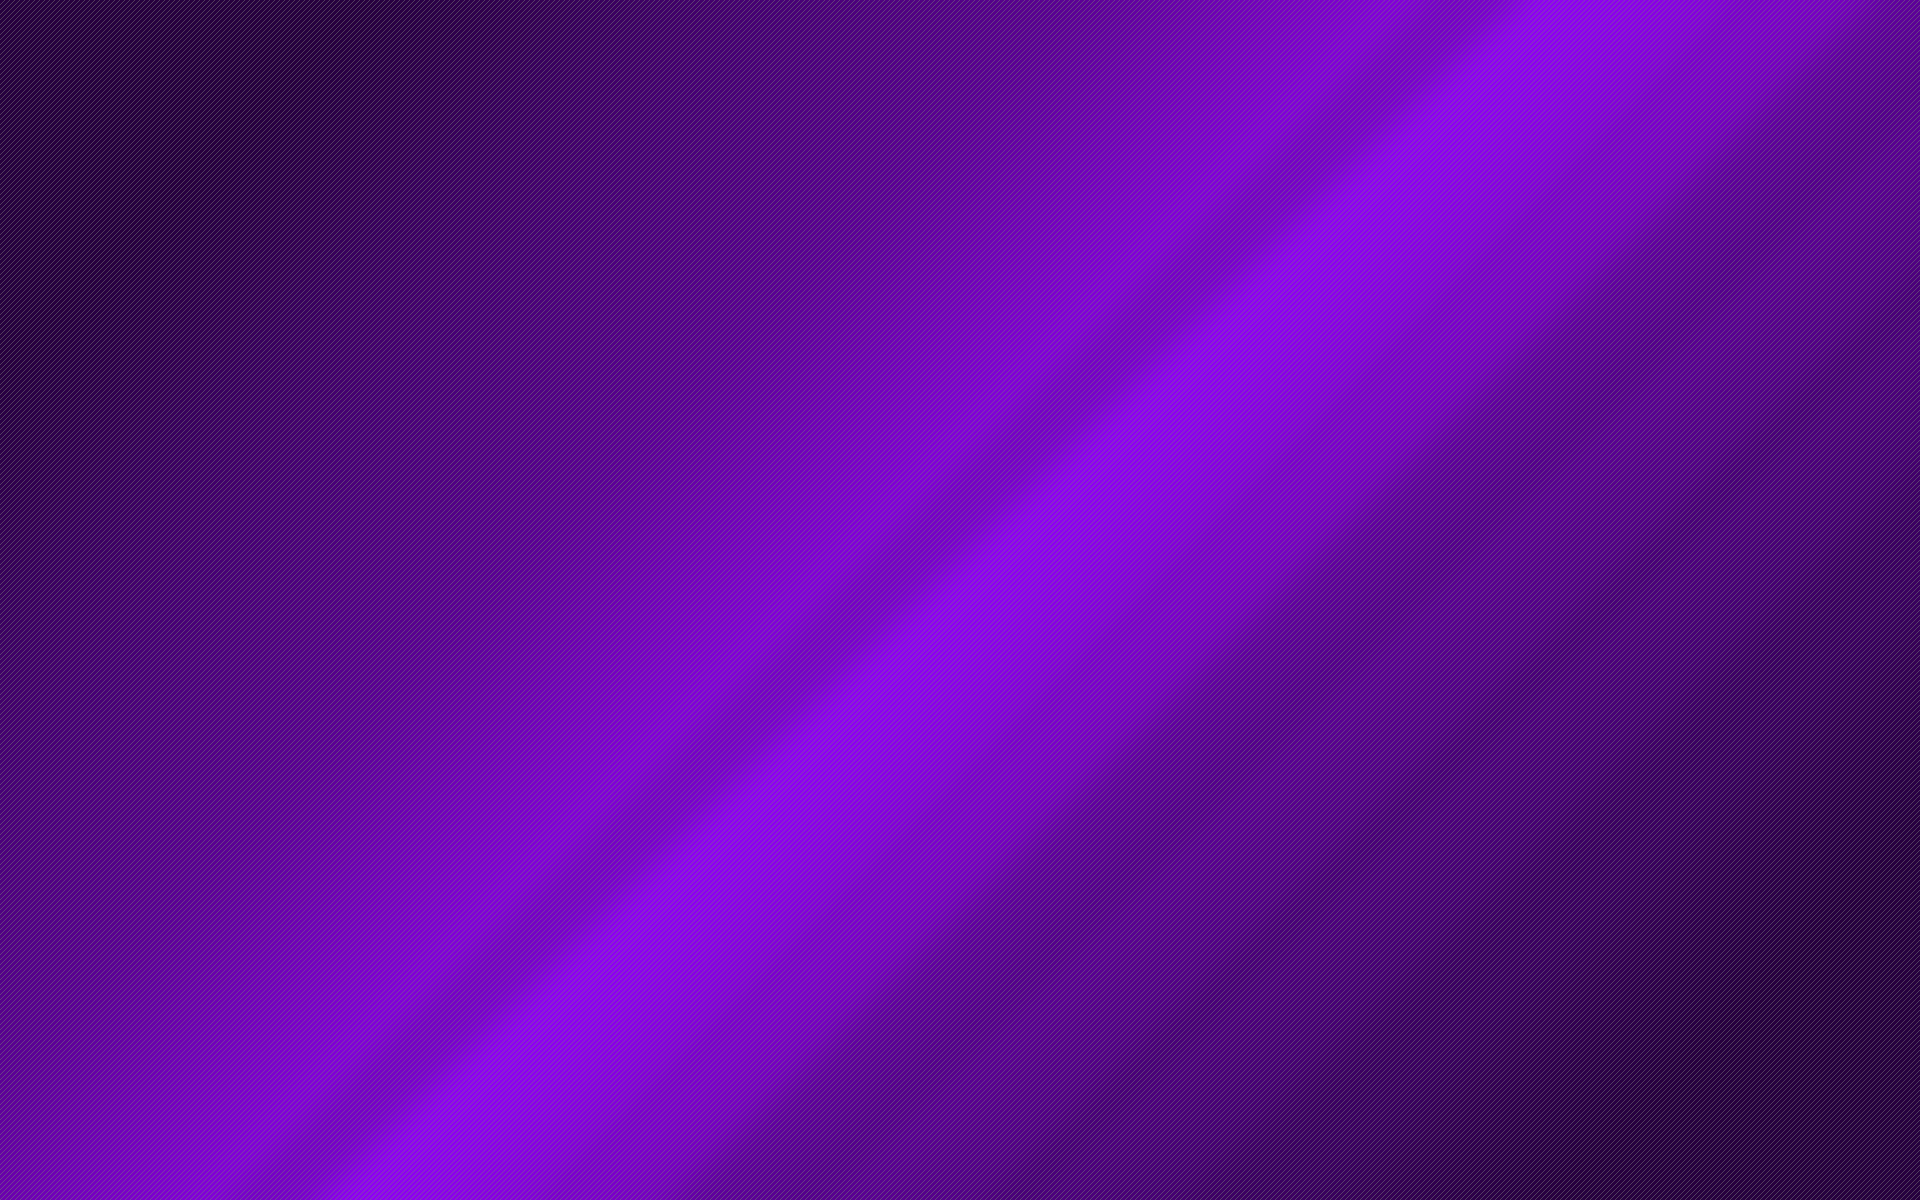 75+] Violet Wallpaper - WallpaperSafari